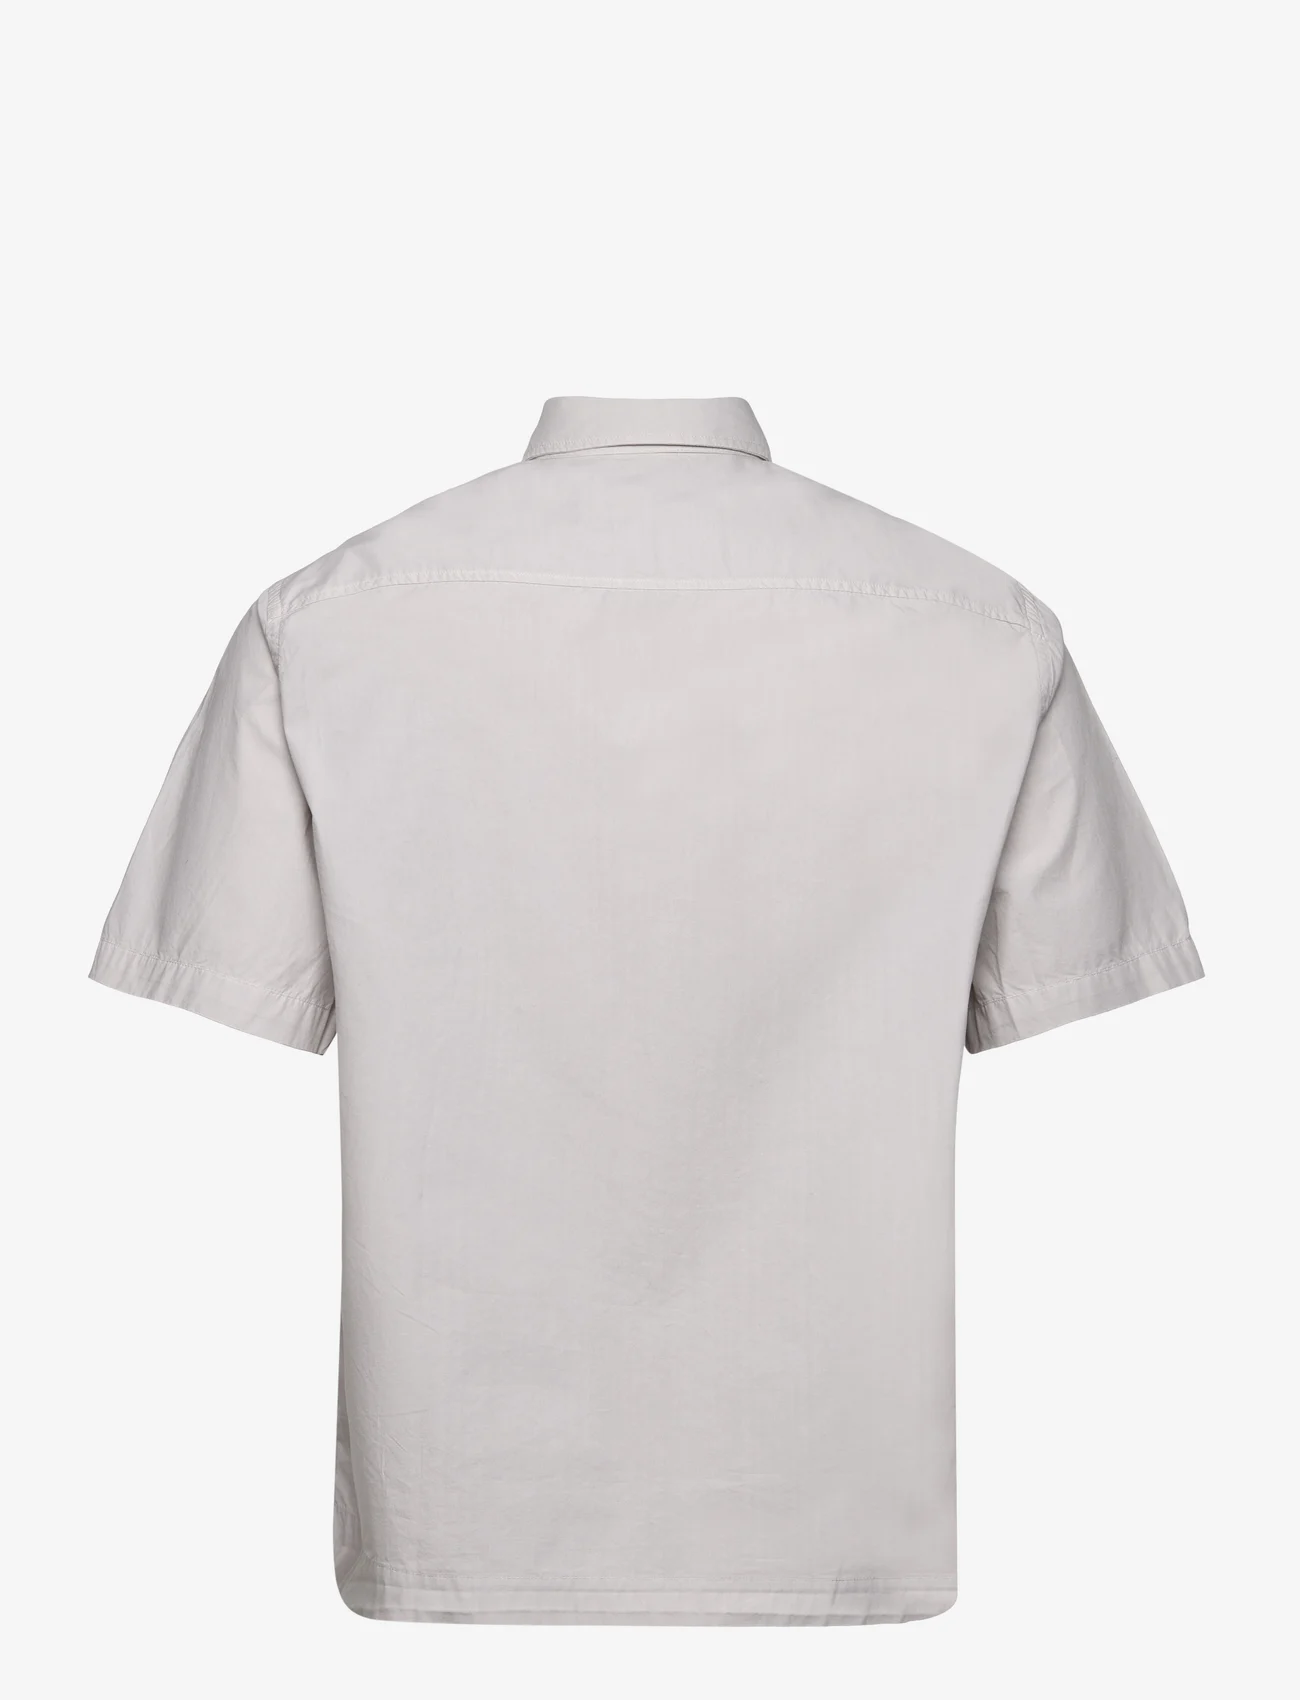 Garment Project - Short Sleeved Shirt - Bone White - kortärmade skjortor - bone white - 1